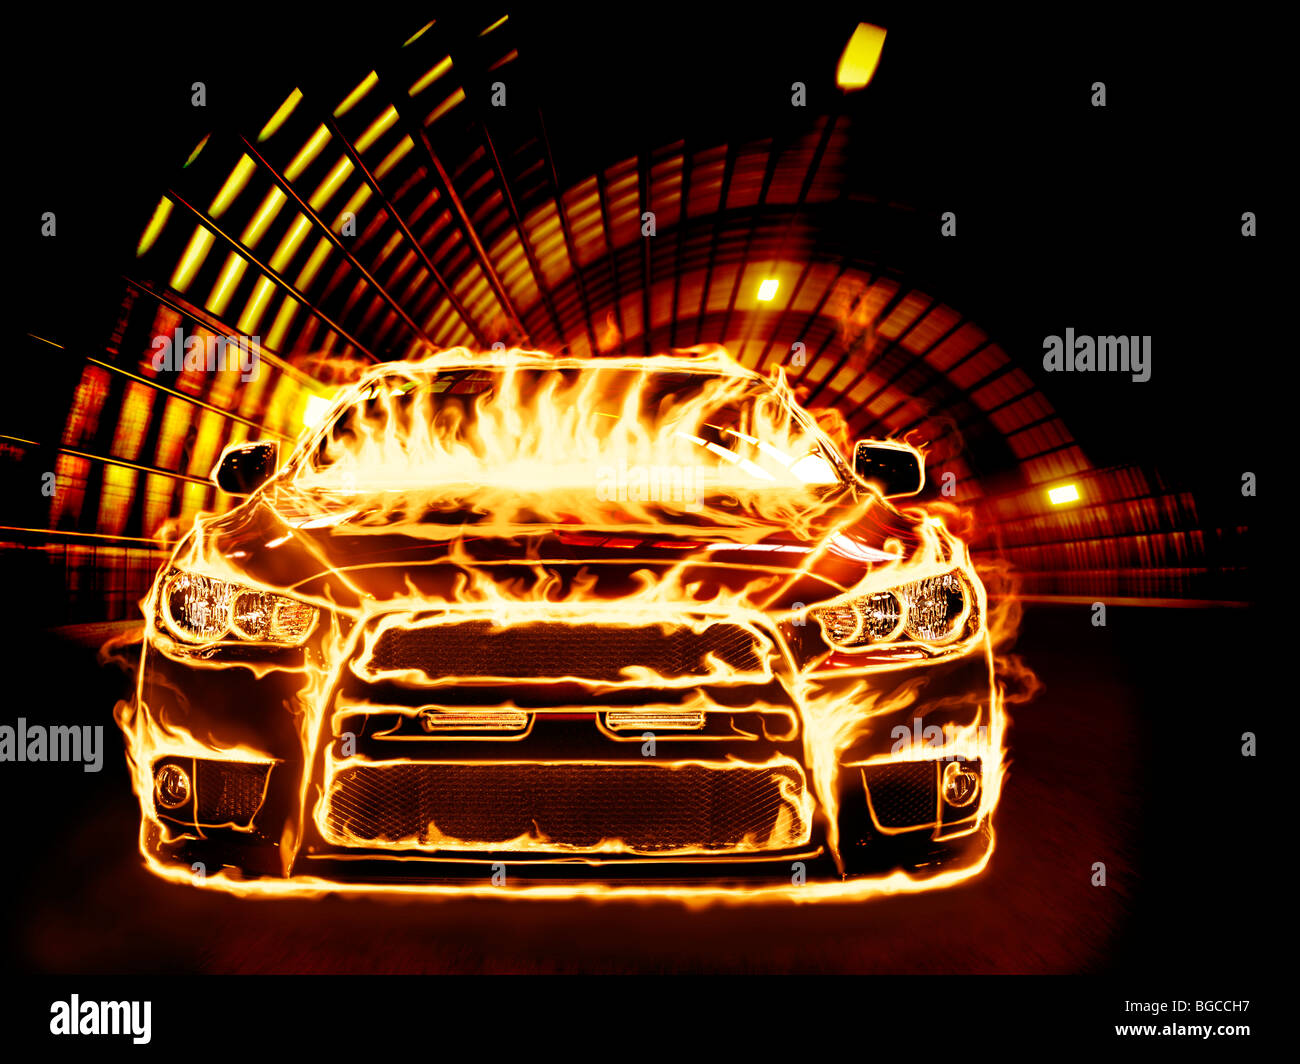 Licencia e impresiones en MaximImages.com - cubierto de llamas carreras de coches deportivos a lo largo de un túnel Foto de stock